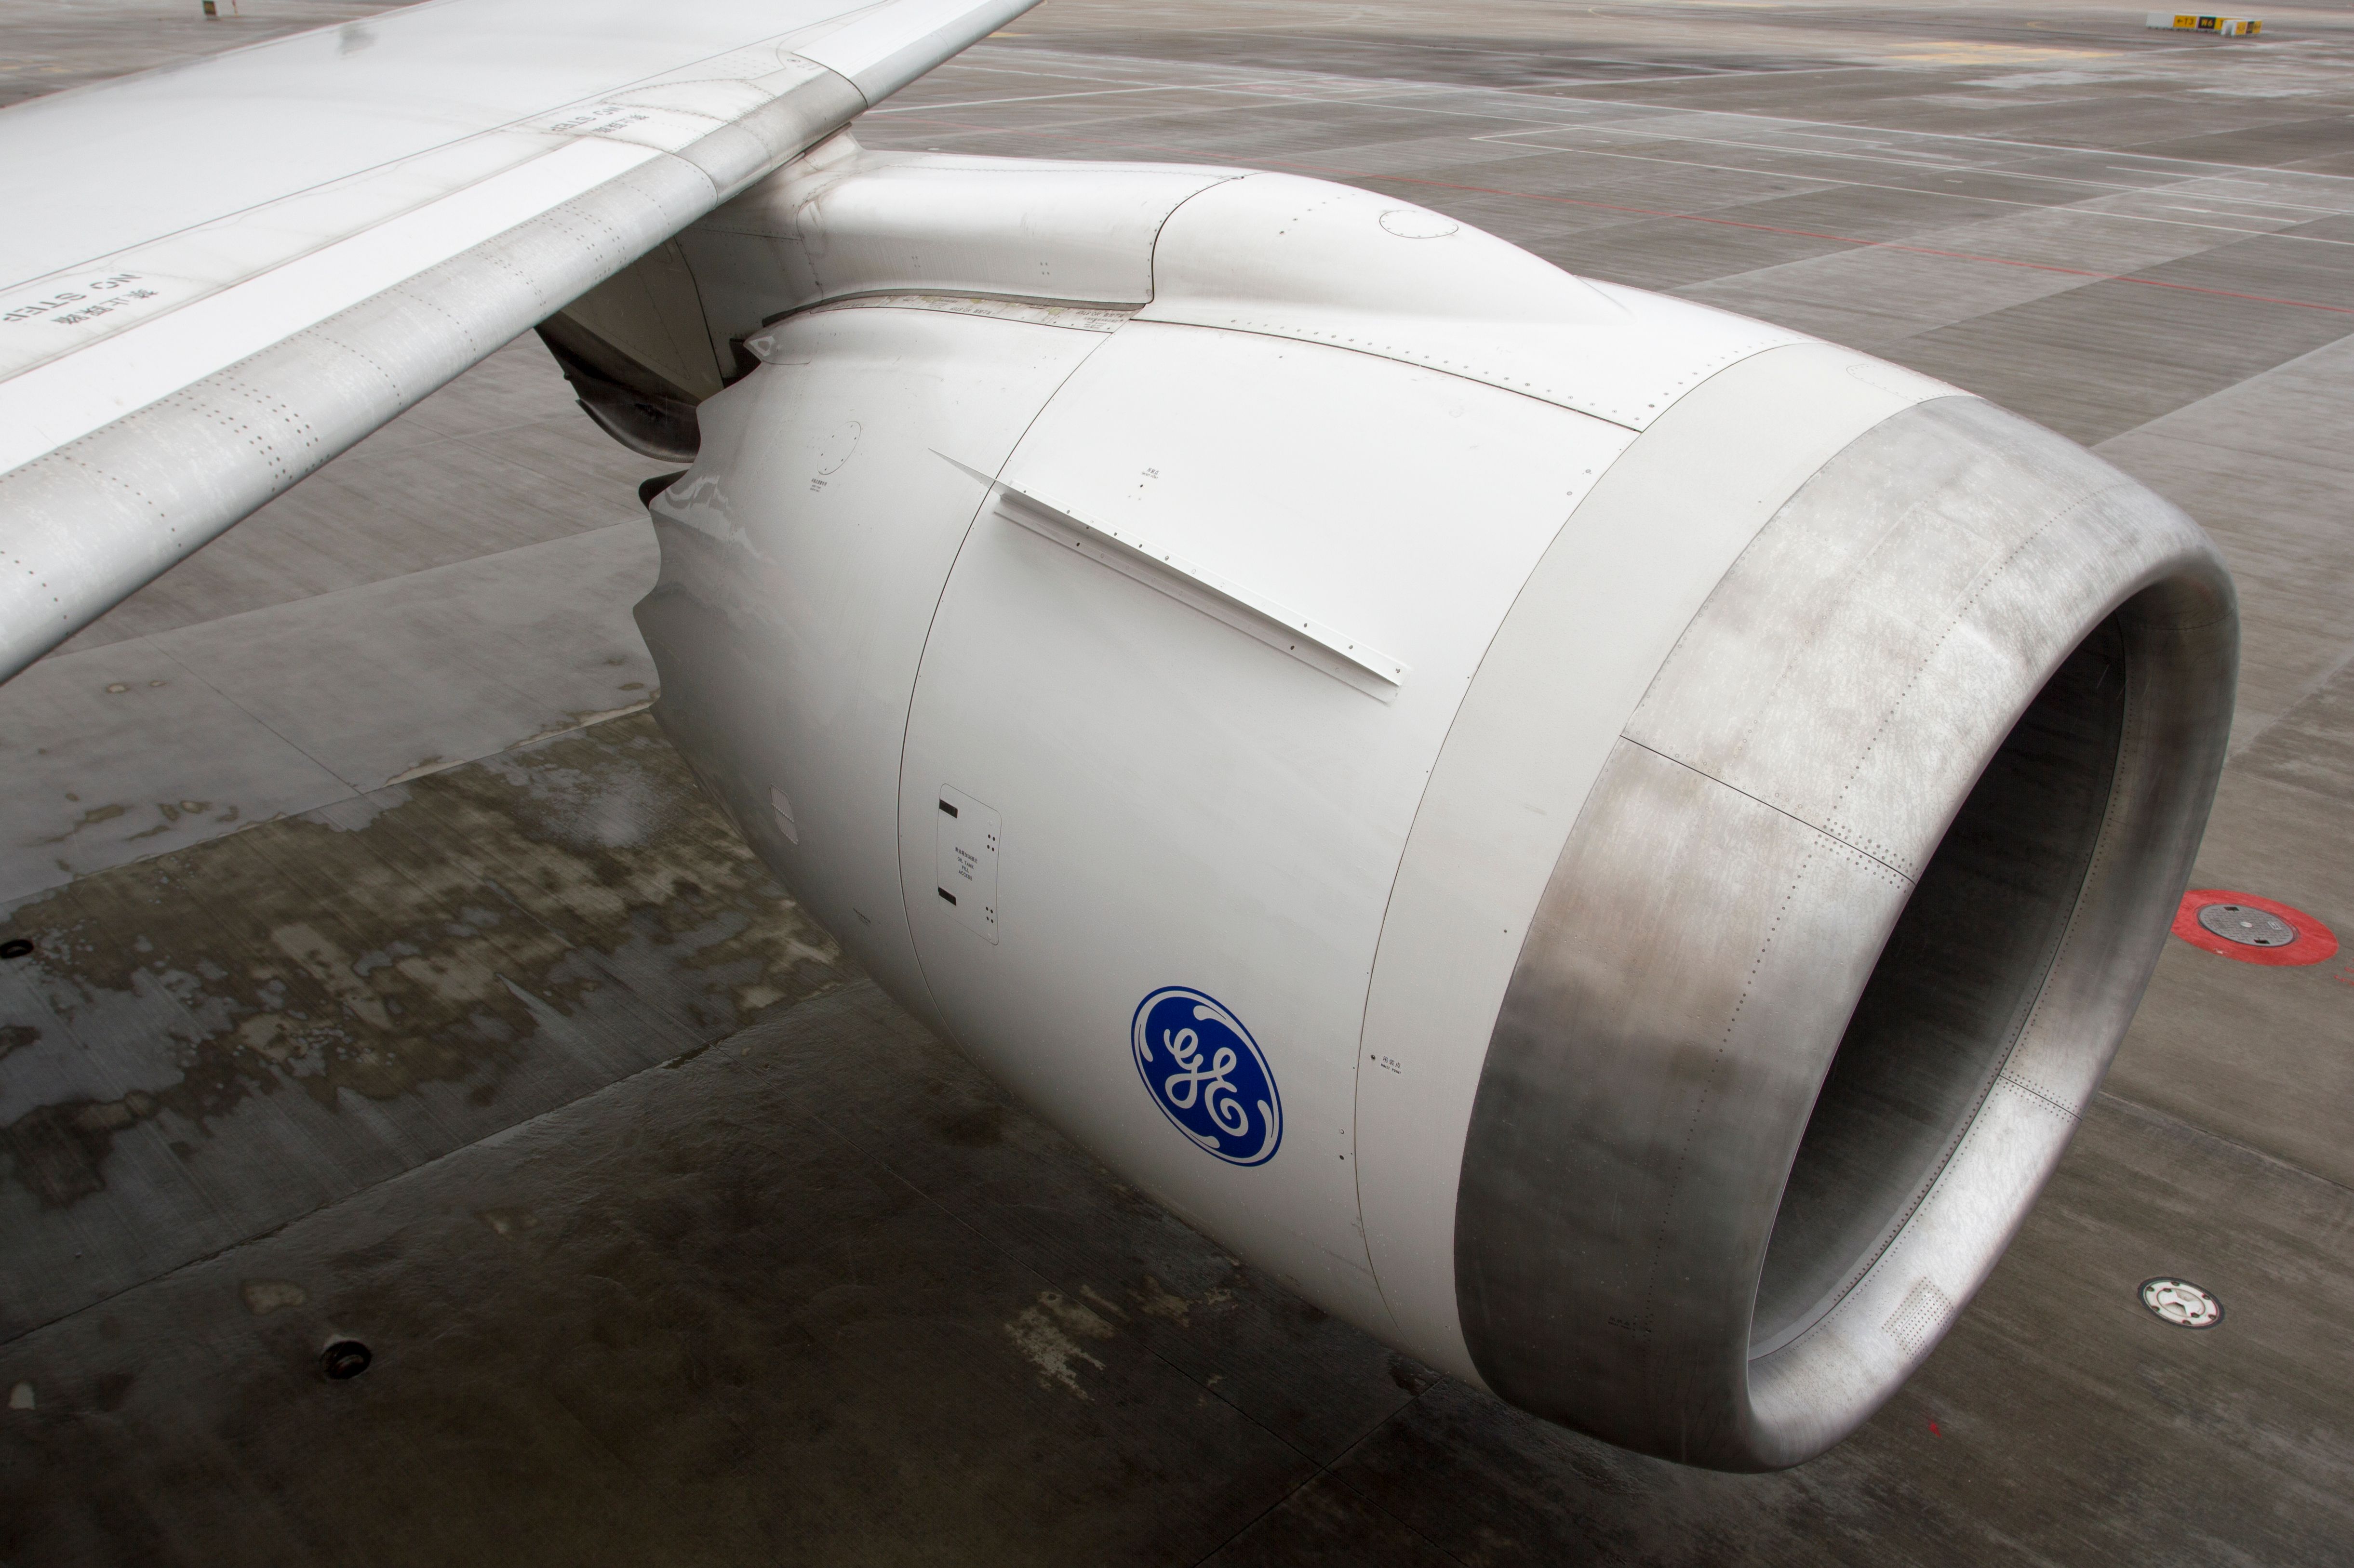 Boeing 787 Dreamliner GEnx engine